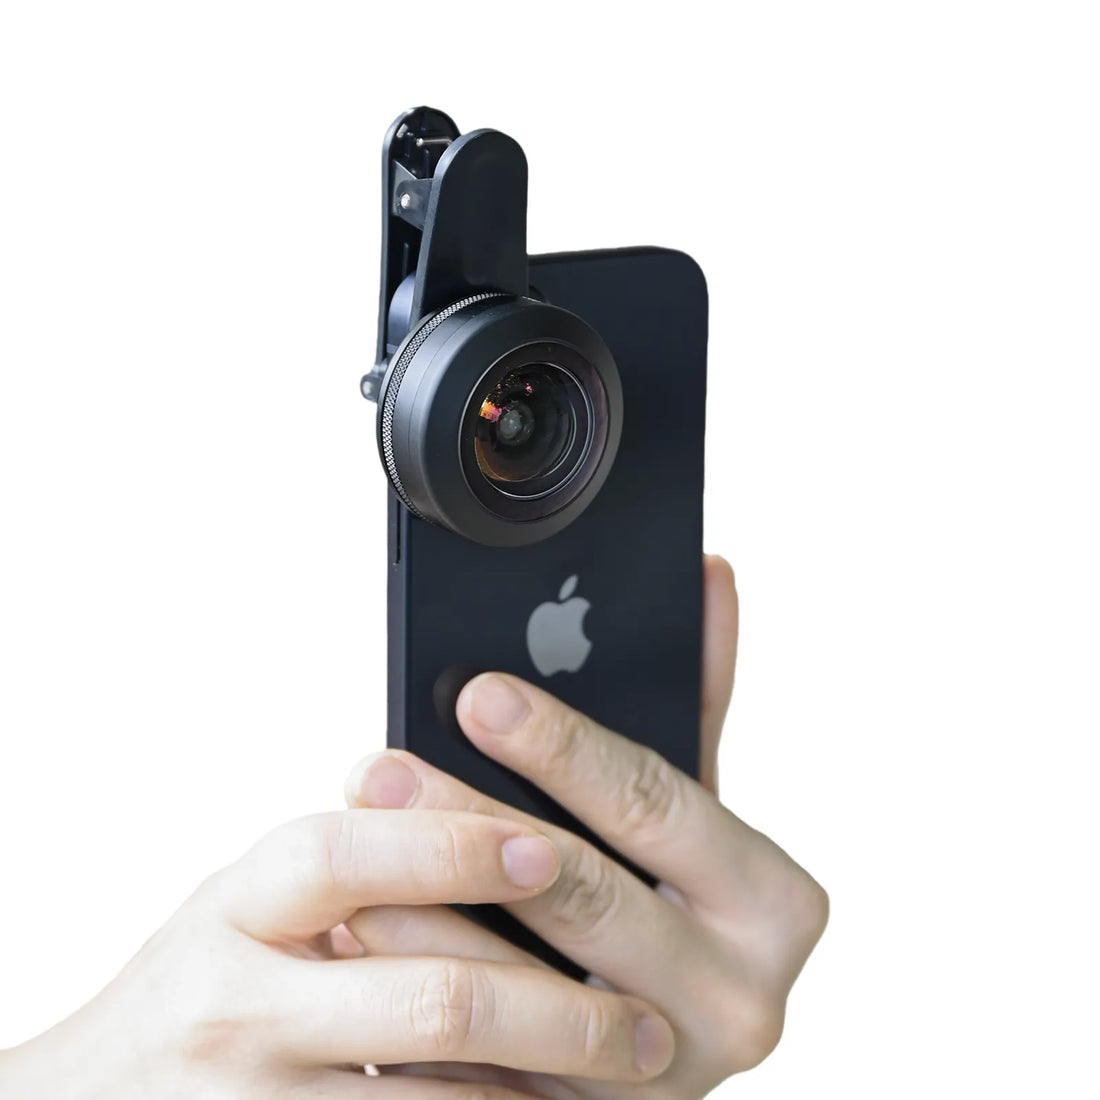 [New] Kase 200° Super Fisheye Lens for Cellphone Best Lenses Fisheye Wide Angle - APEXEL INDIA - Mobile Lens - Mobile Camera Lens - Cellphone Accessories - Phone Lens - Smartphone Lens